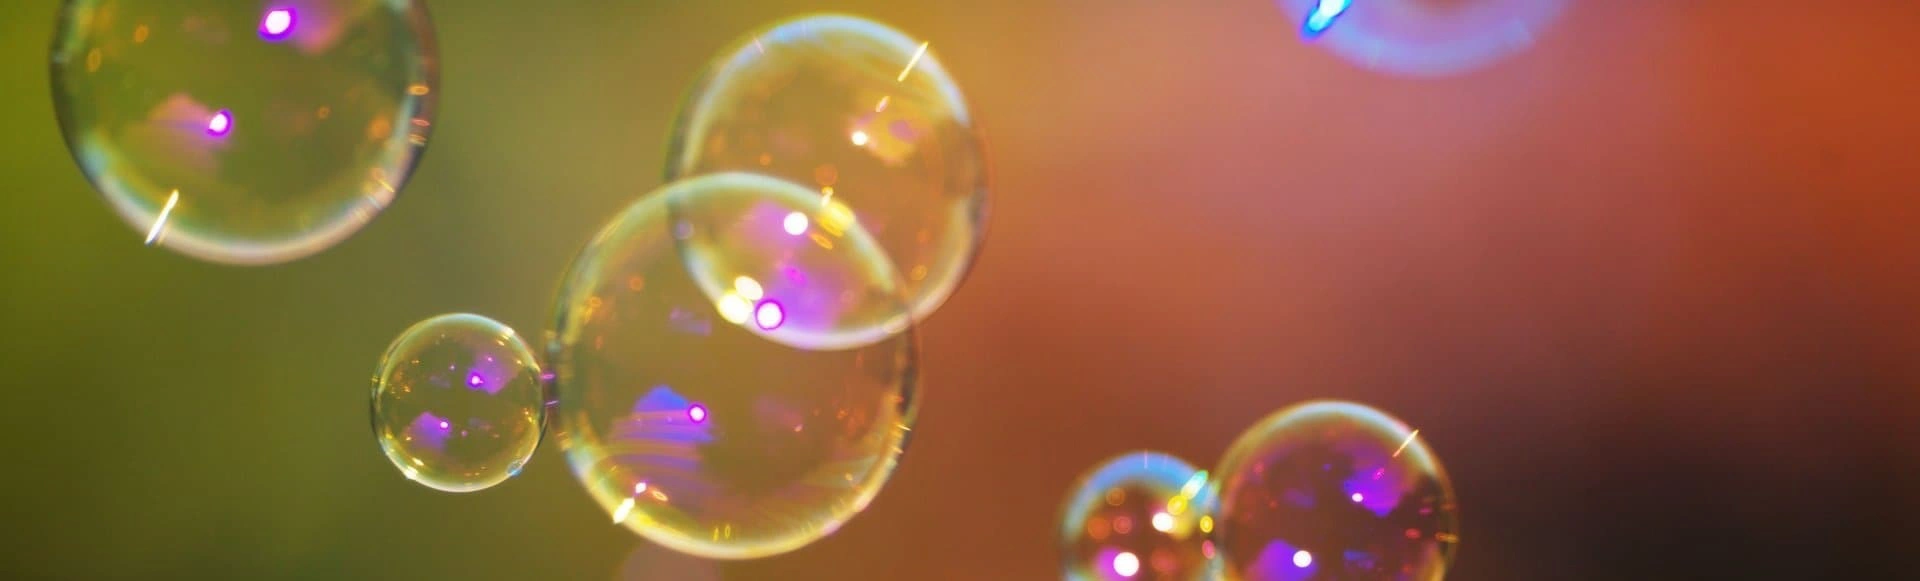 Сенсация на планете мыльных пузырей: Мега-шоу Трансформеров в Зимнем театре!